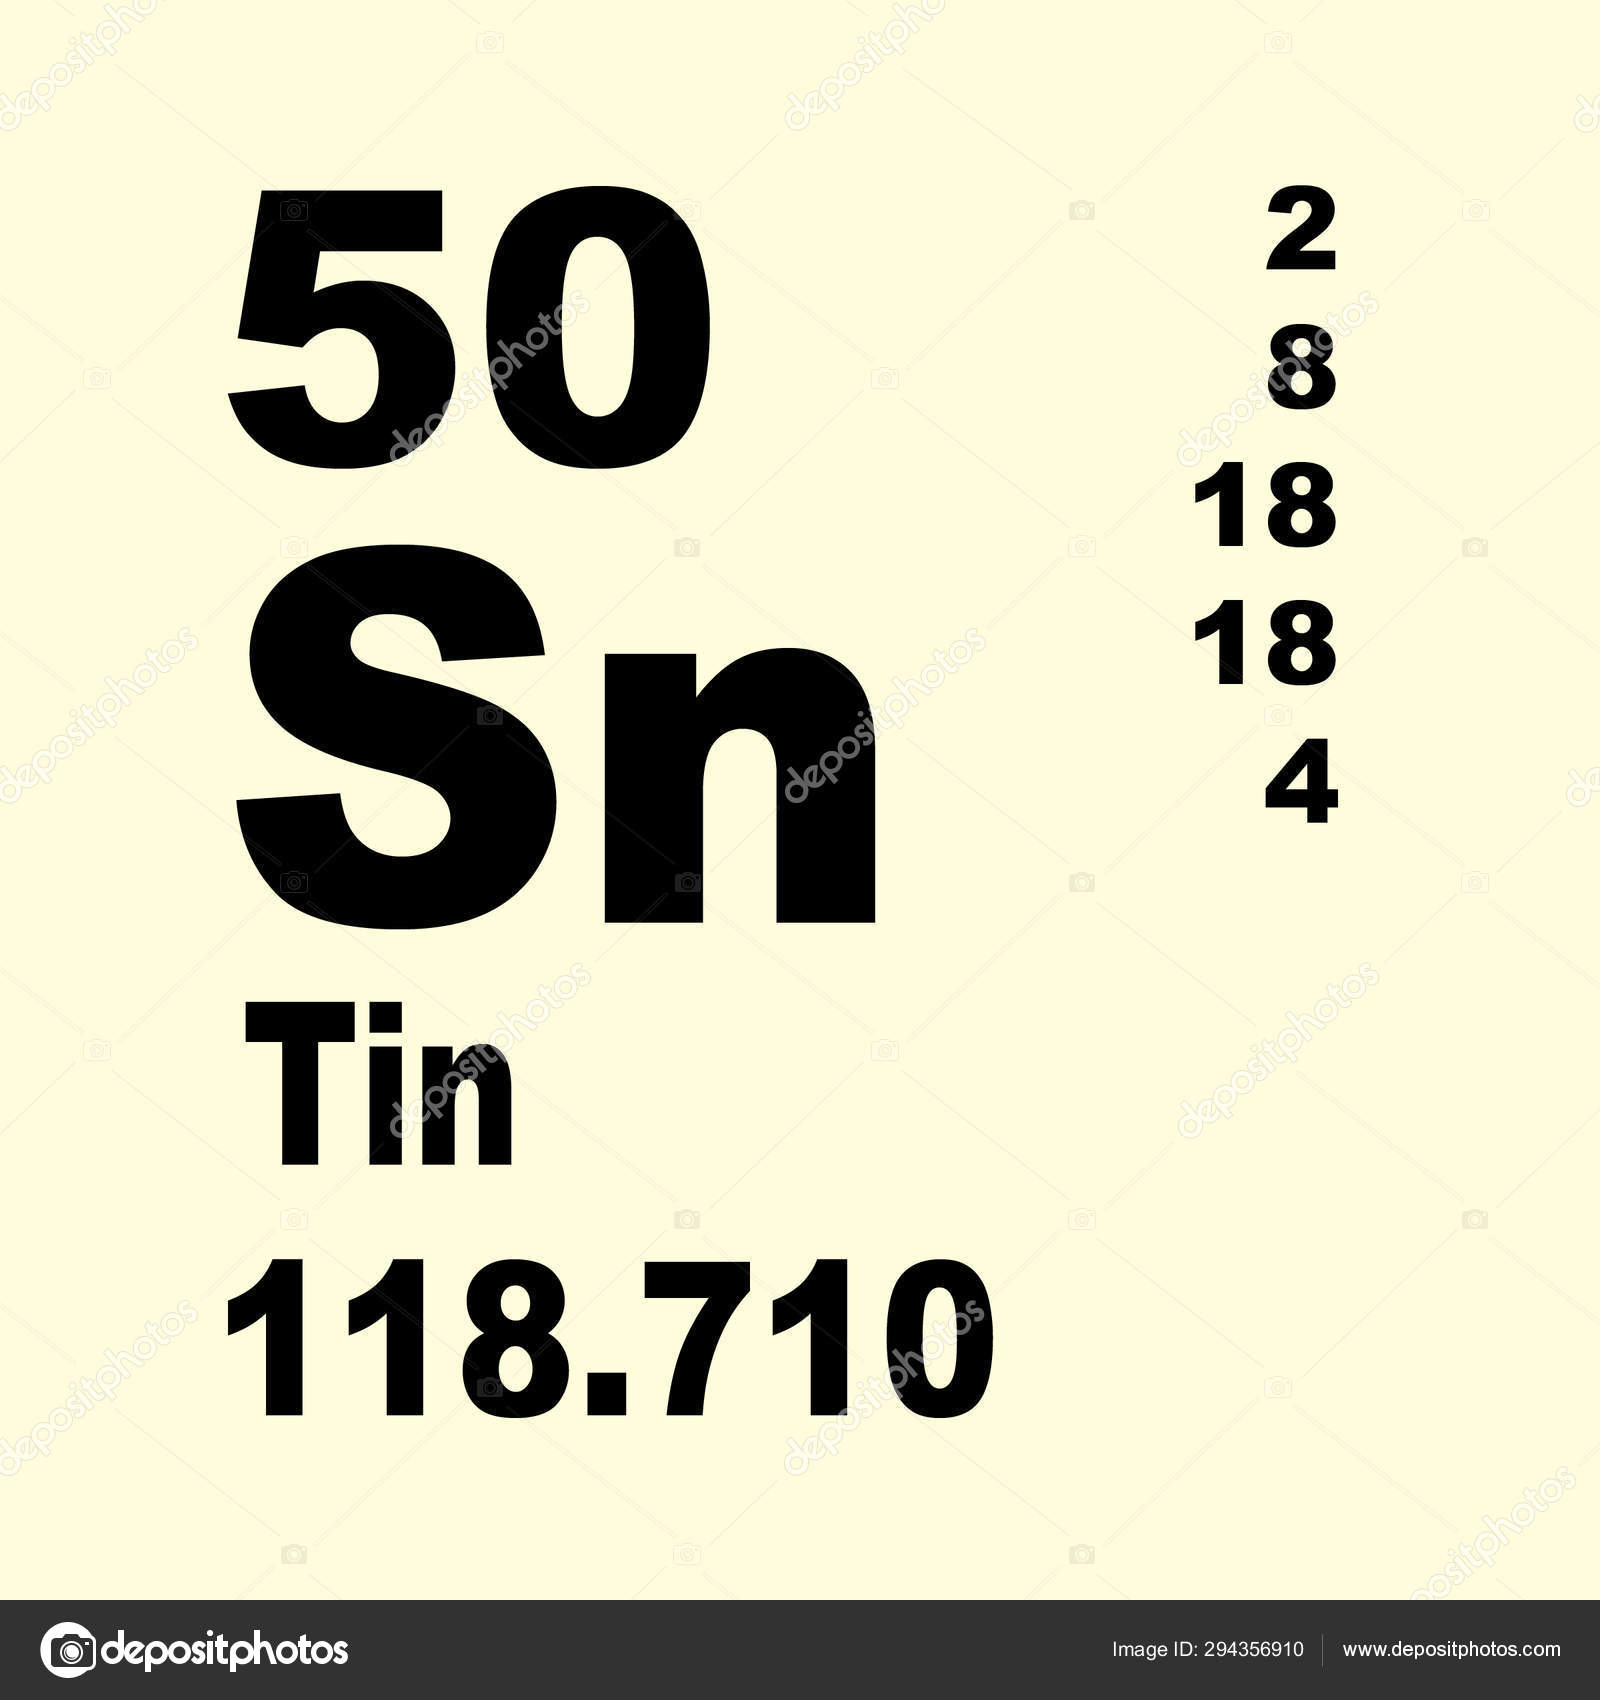 tin in the periodic table